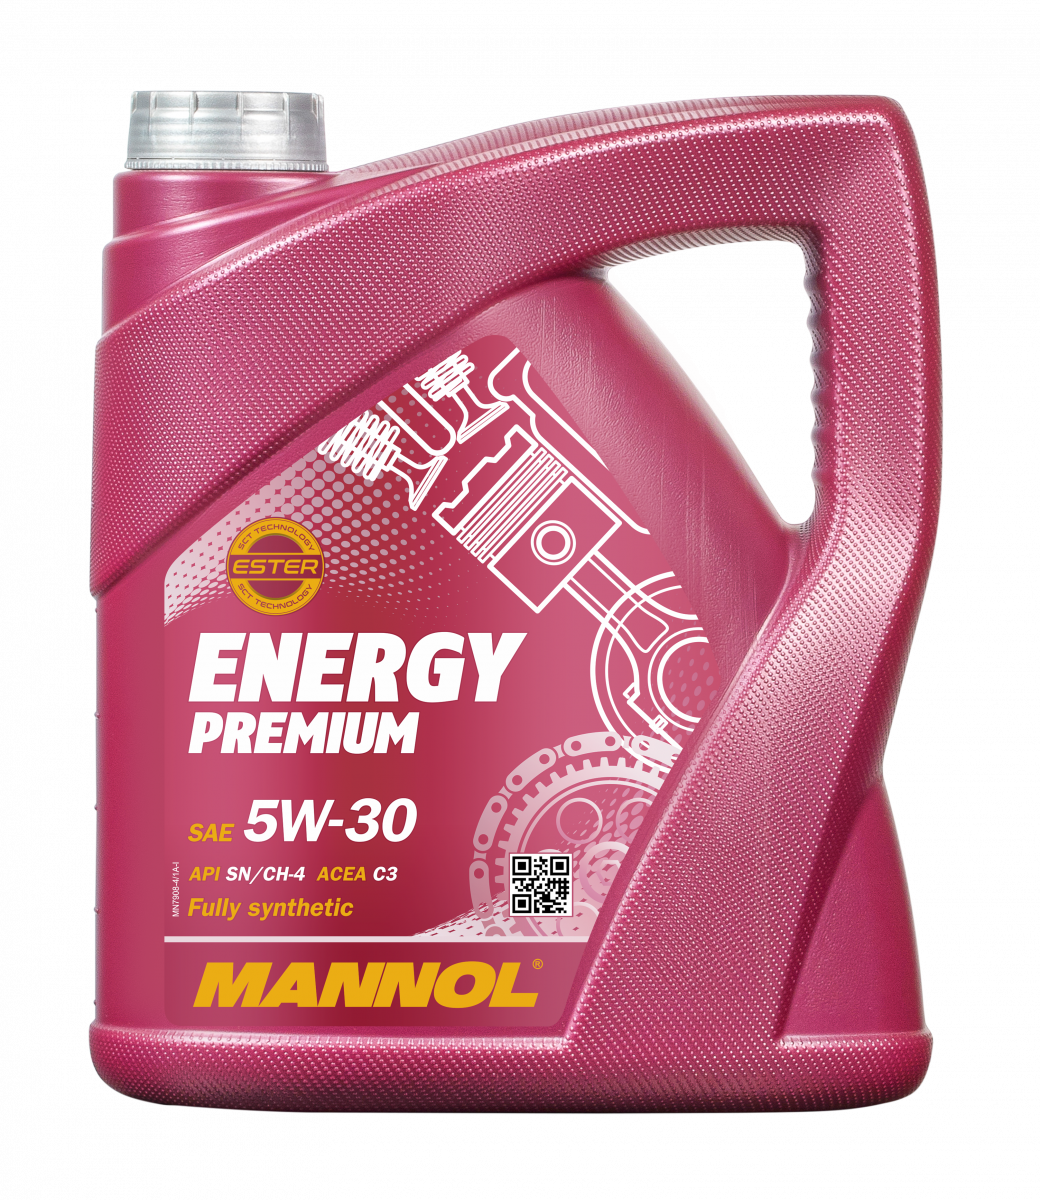 MANNOL 4 Liter Energy Premium 5W-30 Leichtlauf-Motoröl API SN/CH-4 ACEA C3